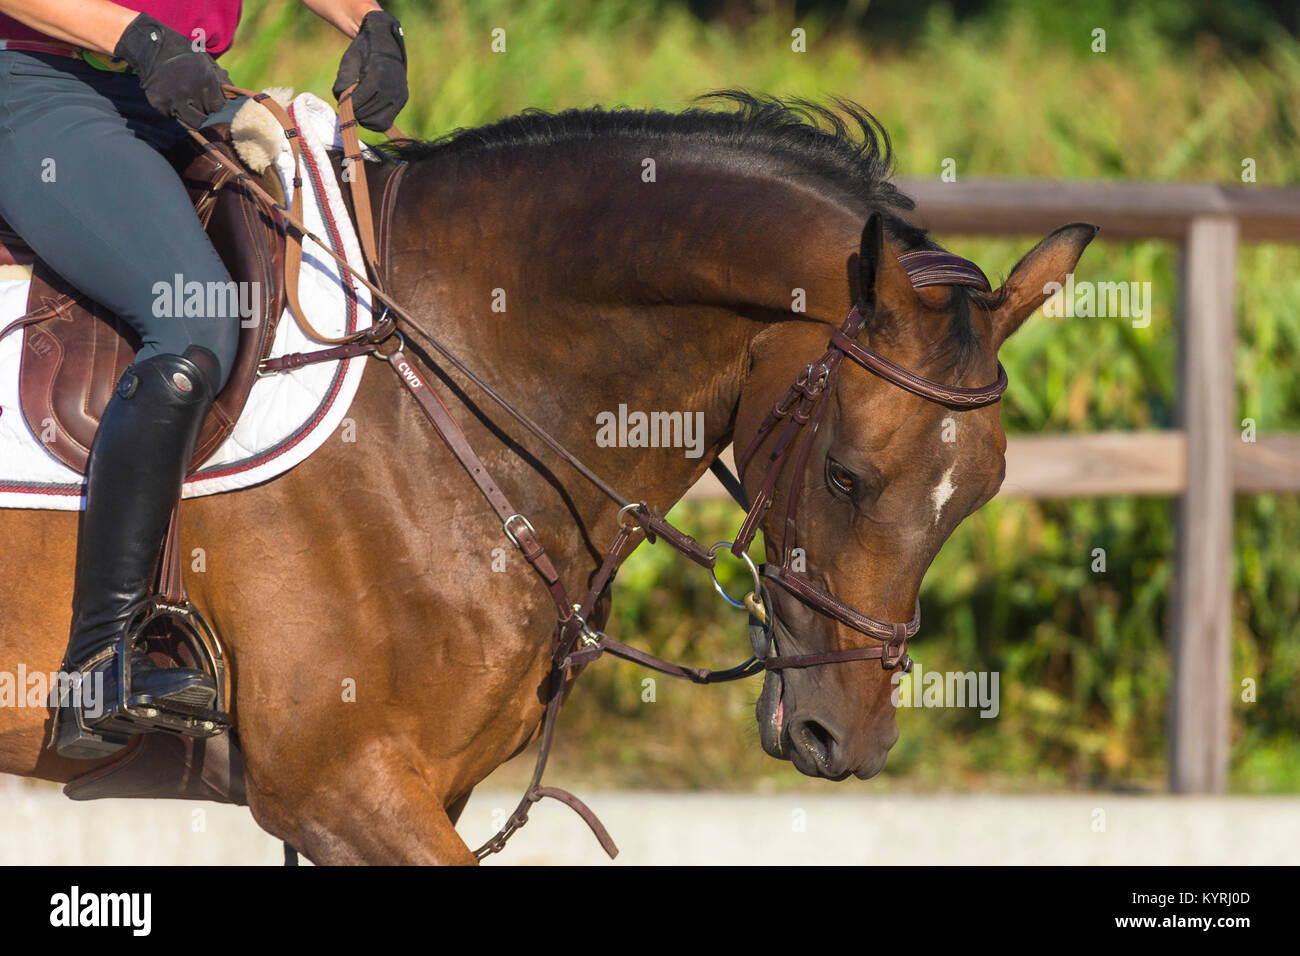 Dutch Warmblood. Rider escolaridad una bahía caballo, comunicando con las riendas. Países Bajos Foto de stock